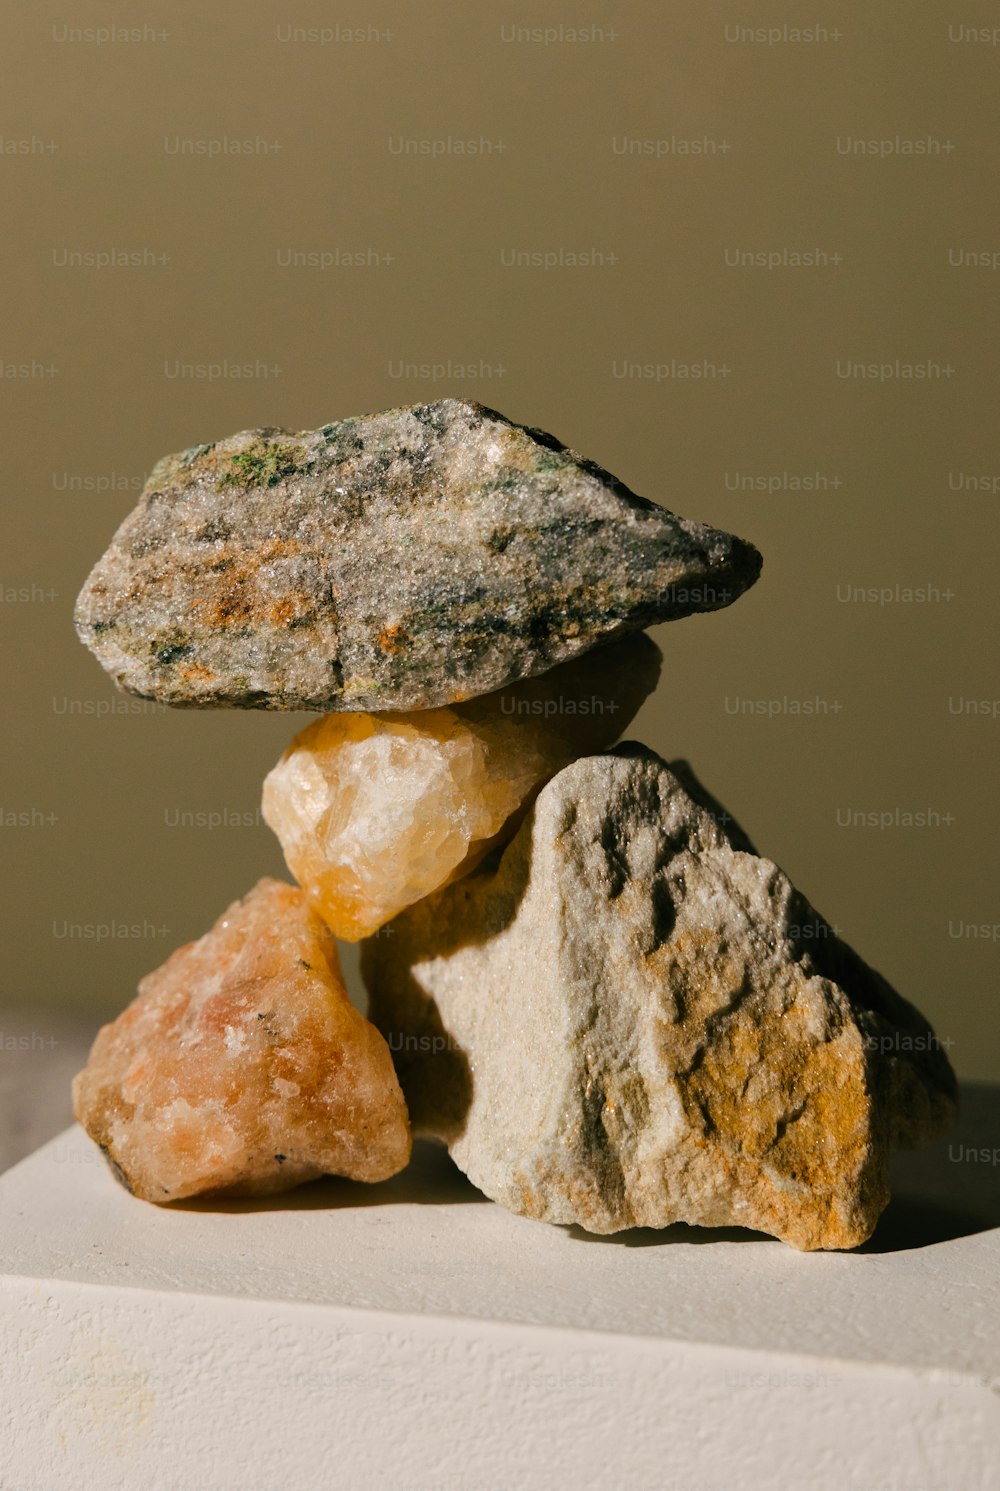 un tas de roches superposées les unes sur les autres